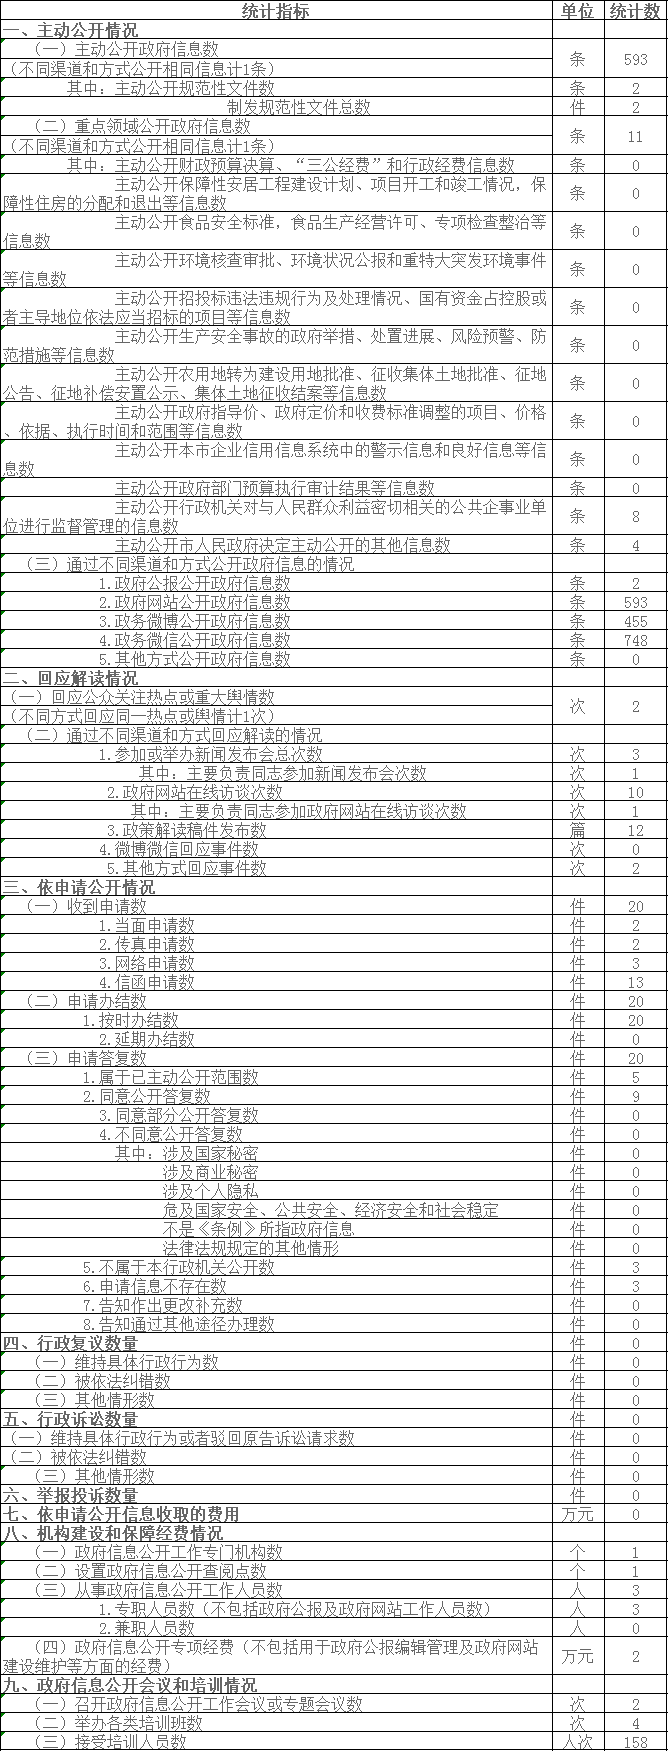 北京市農村工作委員會政府信息公開情況統計表